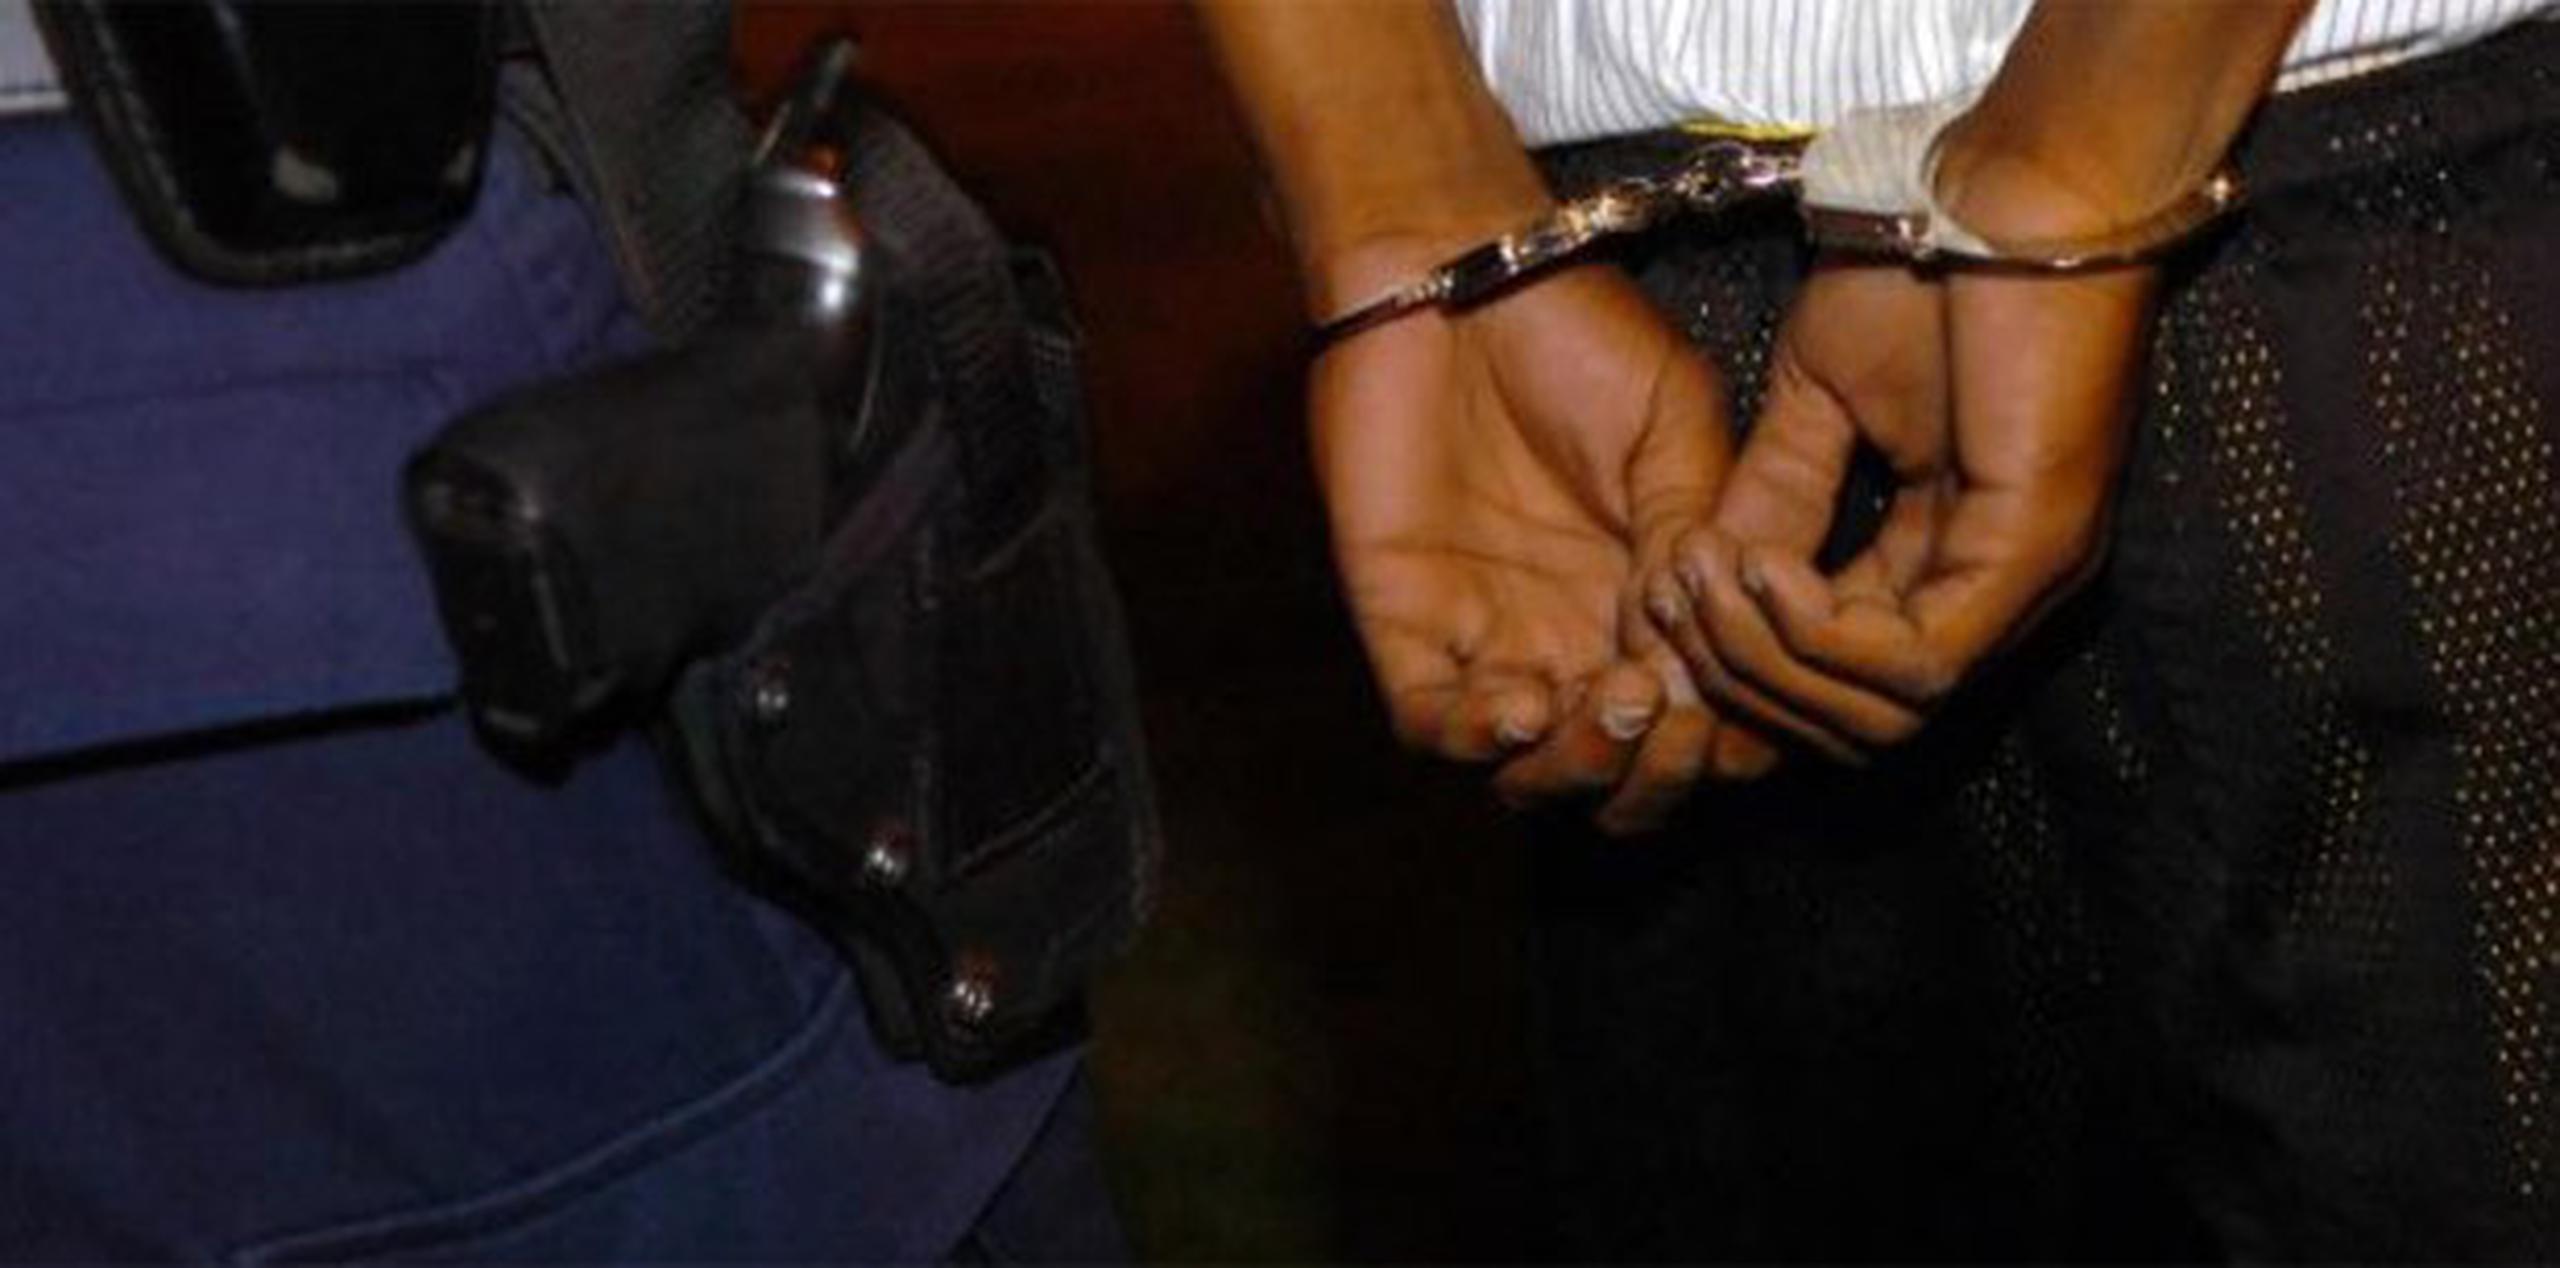 El excompañero fue arrestado, y permanecía detenido en la Comandancia de Aguadilla. (Archivo)